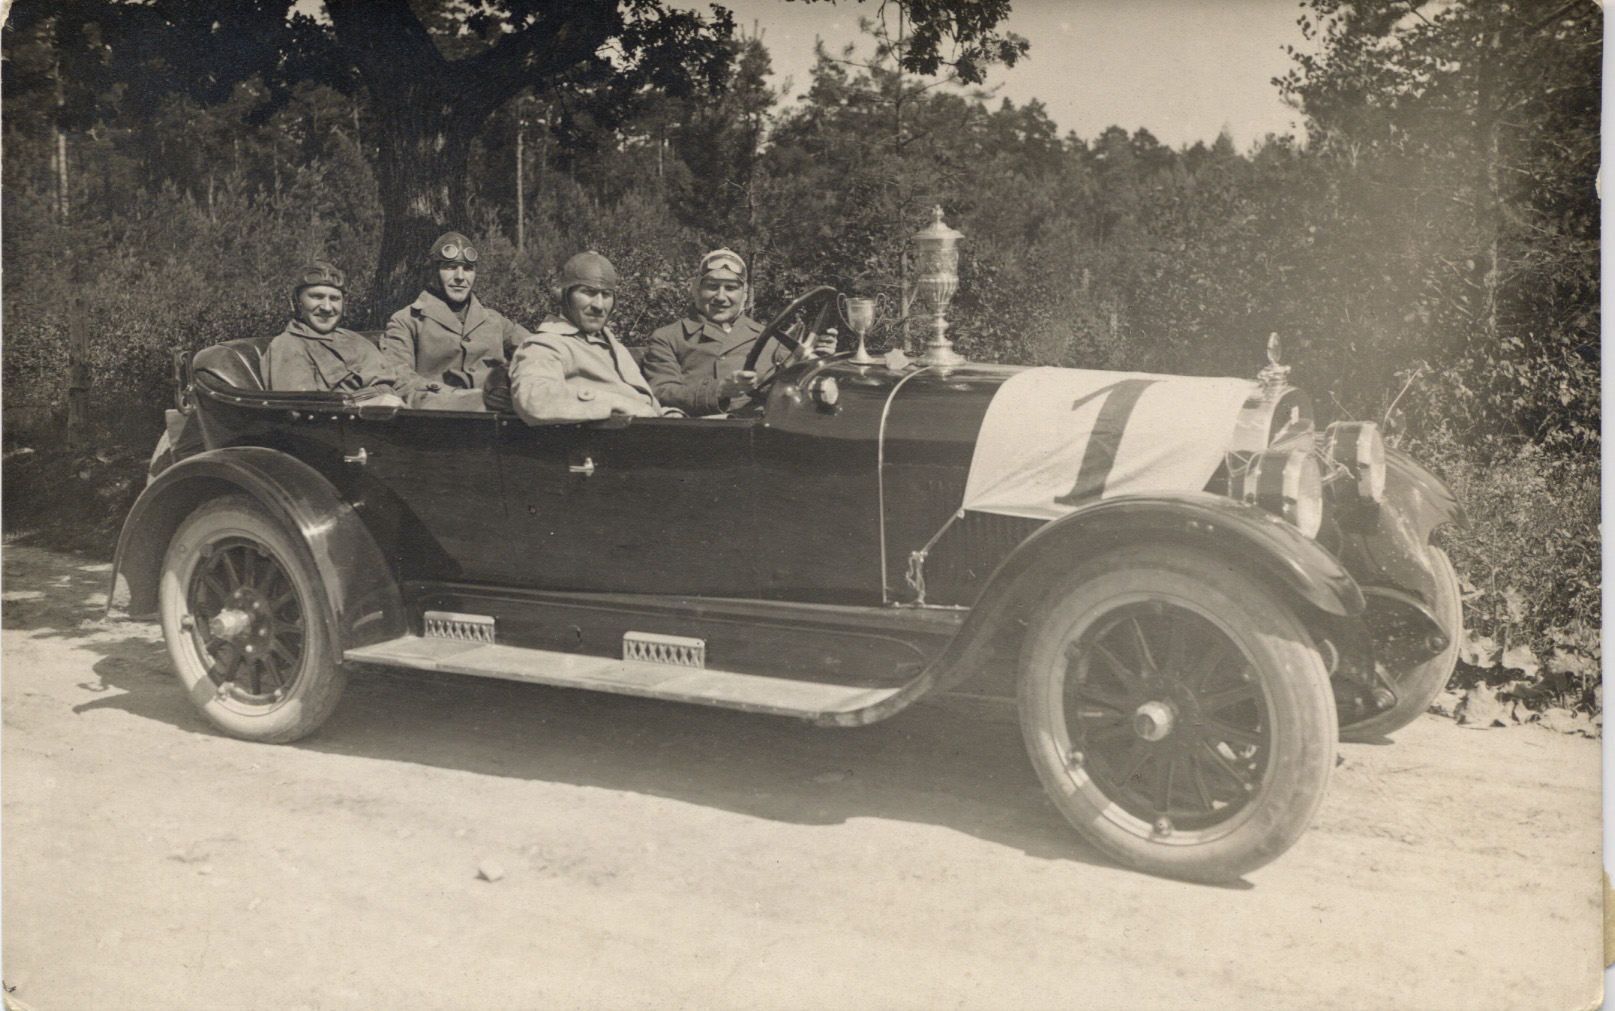 Vennad Johansonid pärast võidukat rallisõitu Julius Johansoni Buickis 1923. aastal Eesti esimene võidusõit toimus 1912. aastal trassil Tallinn-Märjamaa-Tallinn. Ainsa eestlasena osales rallil (ja võitis selle!) Julius Johanson, keda nimetatakse ka võidusõitjate isaks. Üks tema karjääri tipphetki oli 1935. aastal püstitatud kiirusrekord Raudalu maanteel, mil ta läbis kilomeetrise vahemaa lendstardist 22,5 sekundiga, st saavutas oma 150 hj Studebakeriga kiiruse 160 km/h.